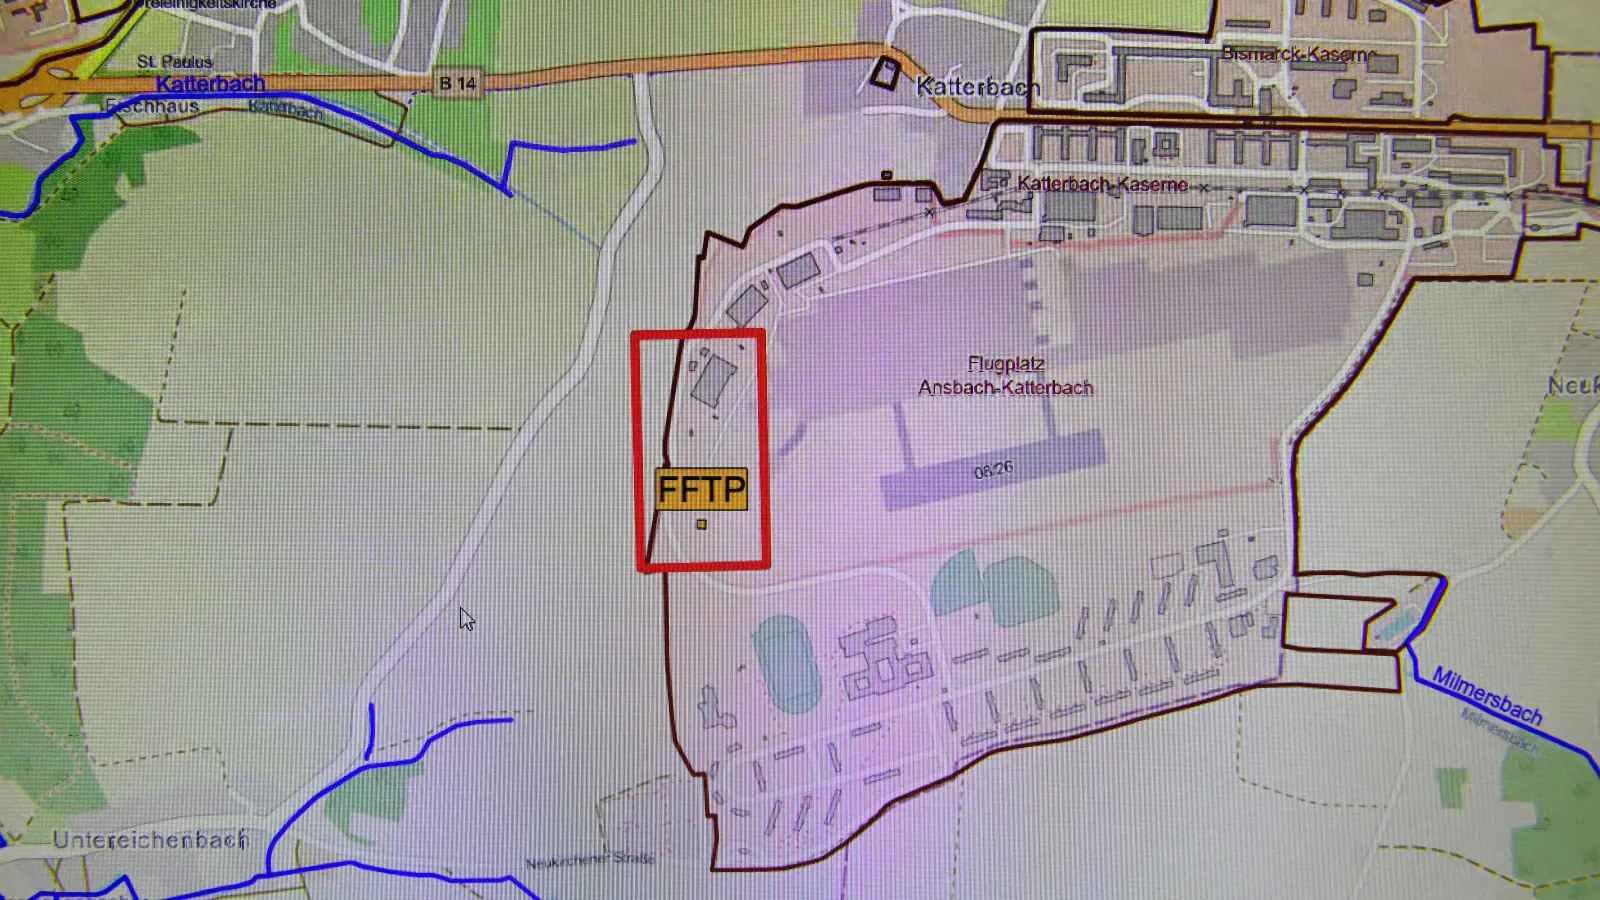 Diese Abbildung aus dem Endbericht zur Sanierungsplanung zeigt den vorgesehenen Standort der Abstromsicherung in der Kaserne in Katterbach. (Repro: Jim Albright)